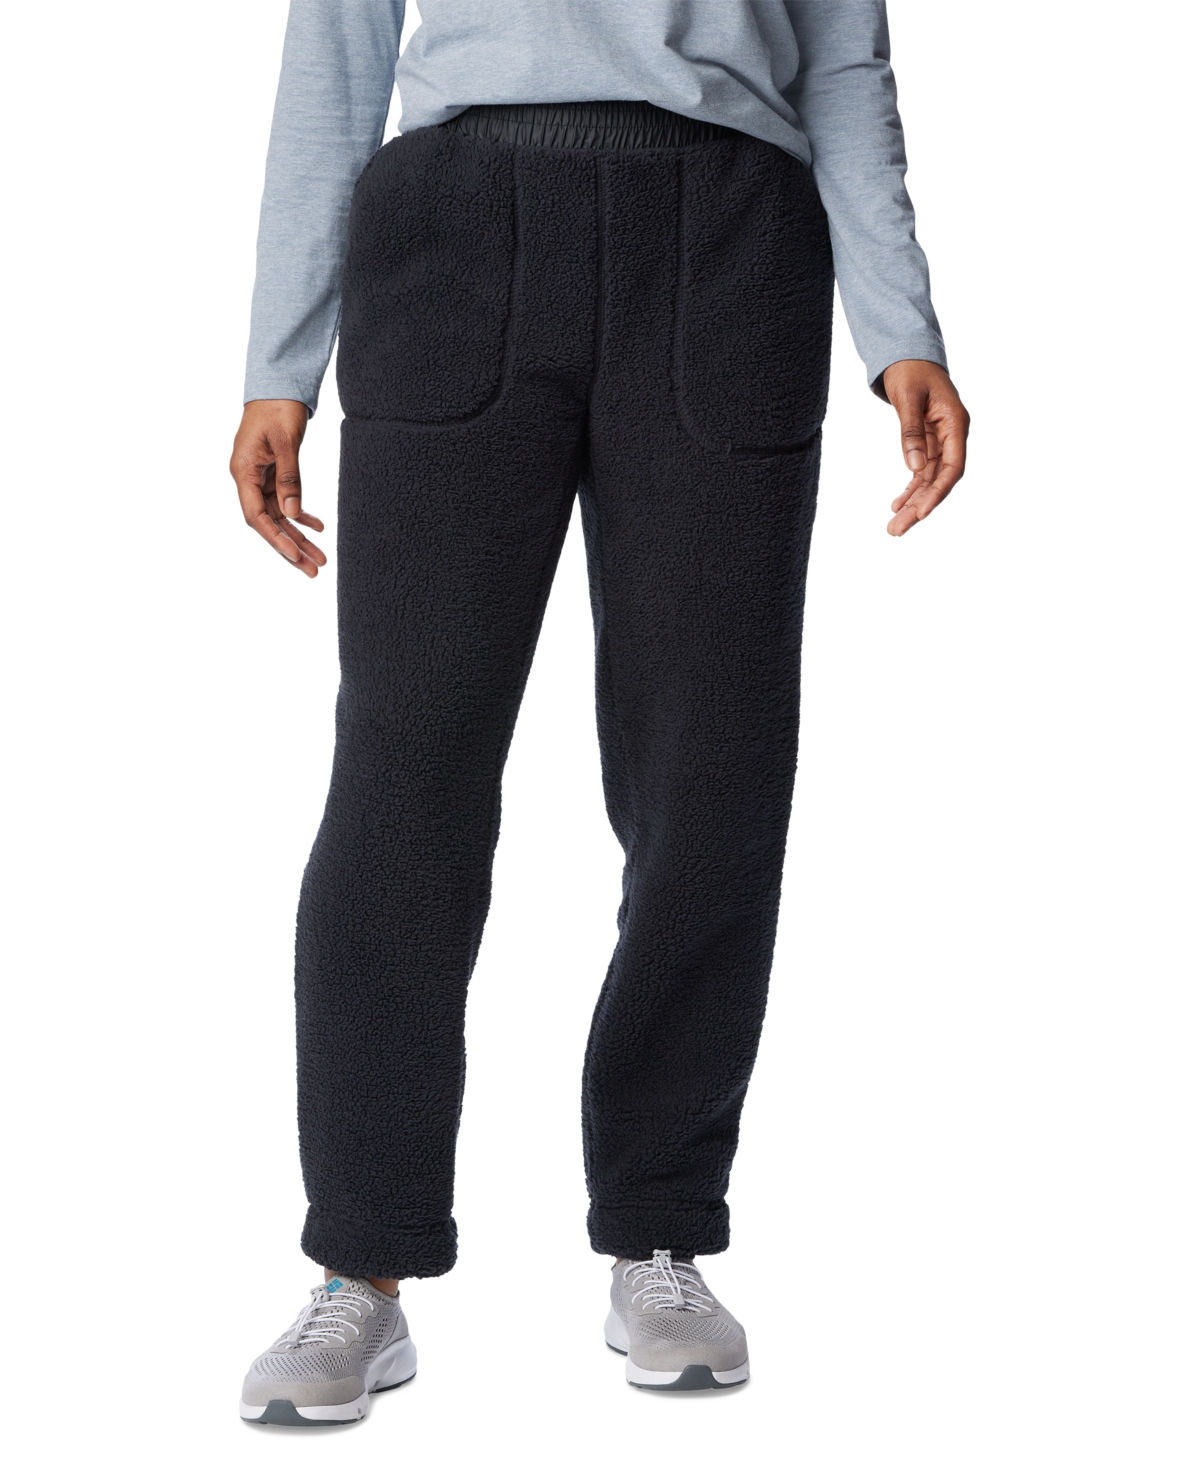 Women's West Bend Fleece Pull-On Pants - Black